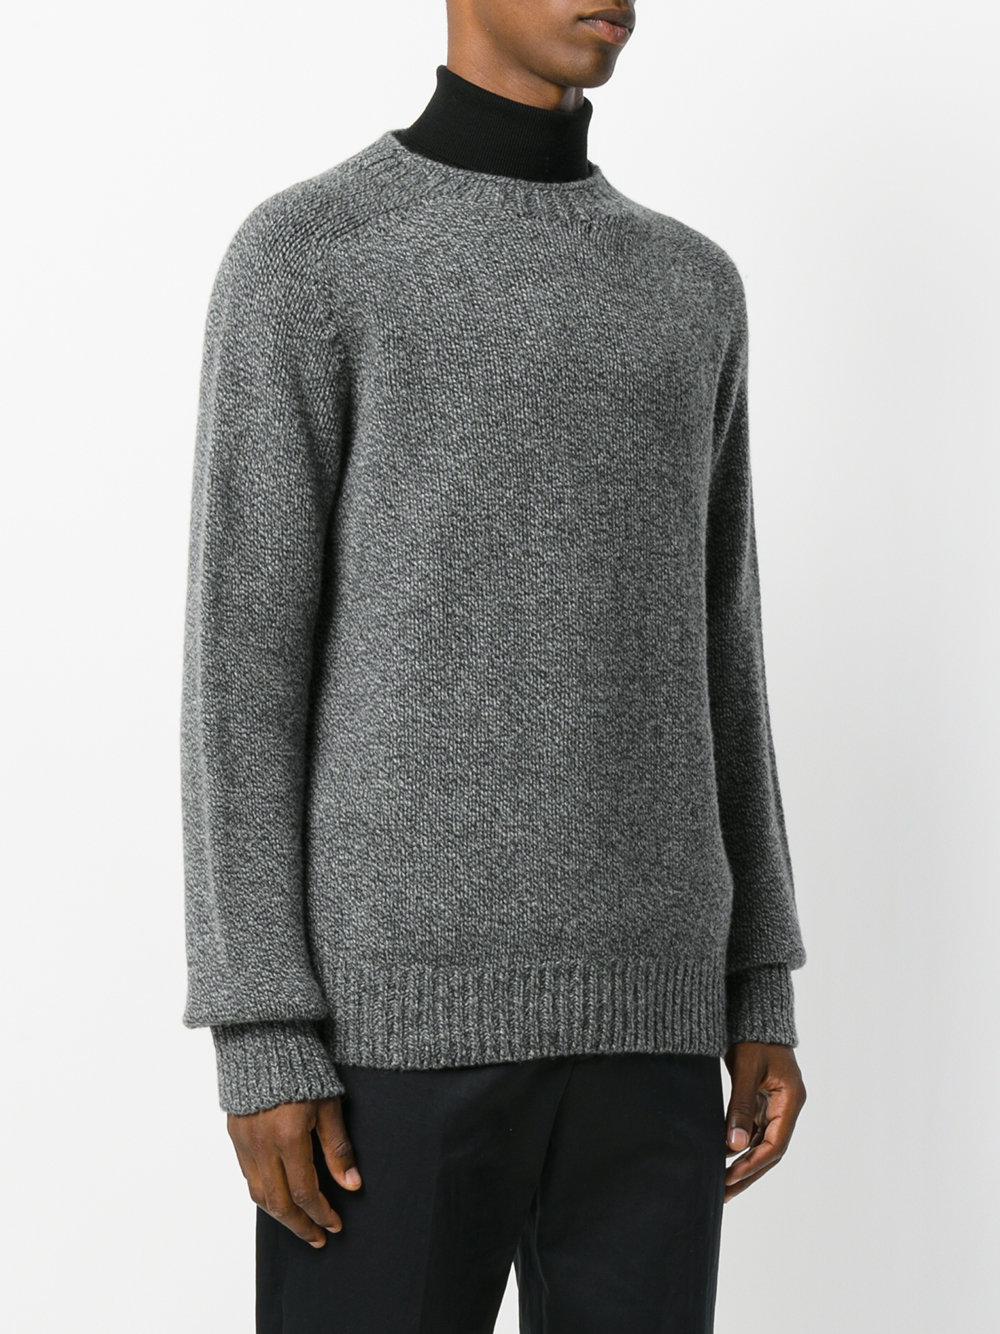 Sunspel Wool Heavy Knit Sweater in Grey (Gray) for Men - Lyst